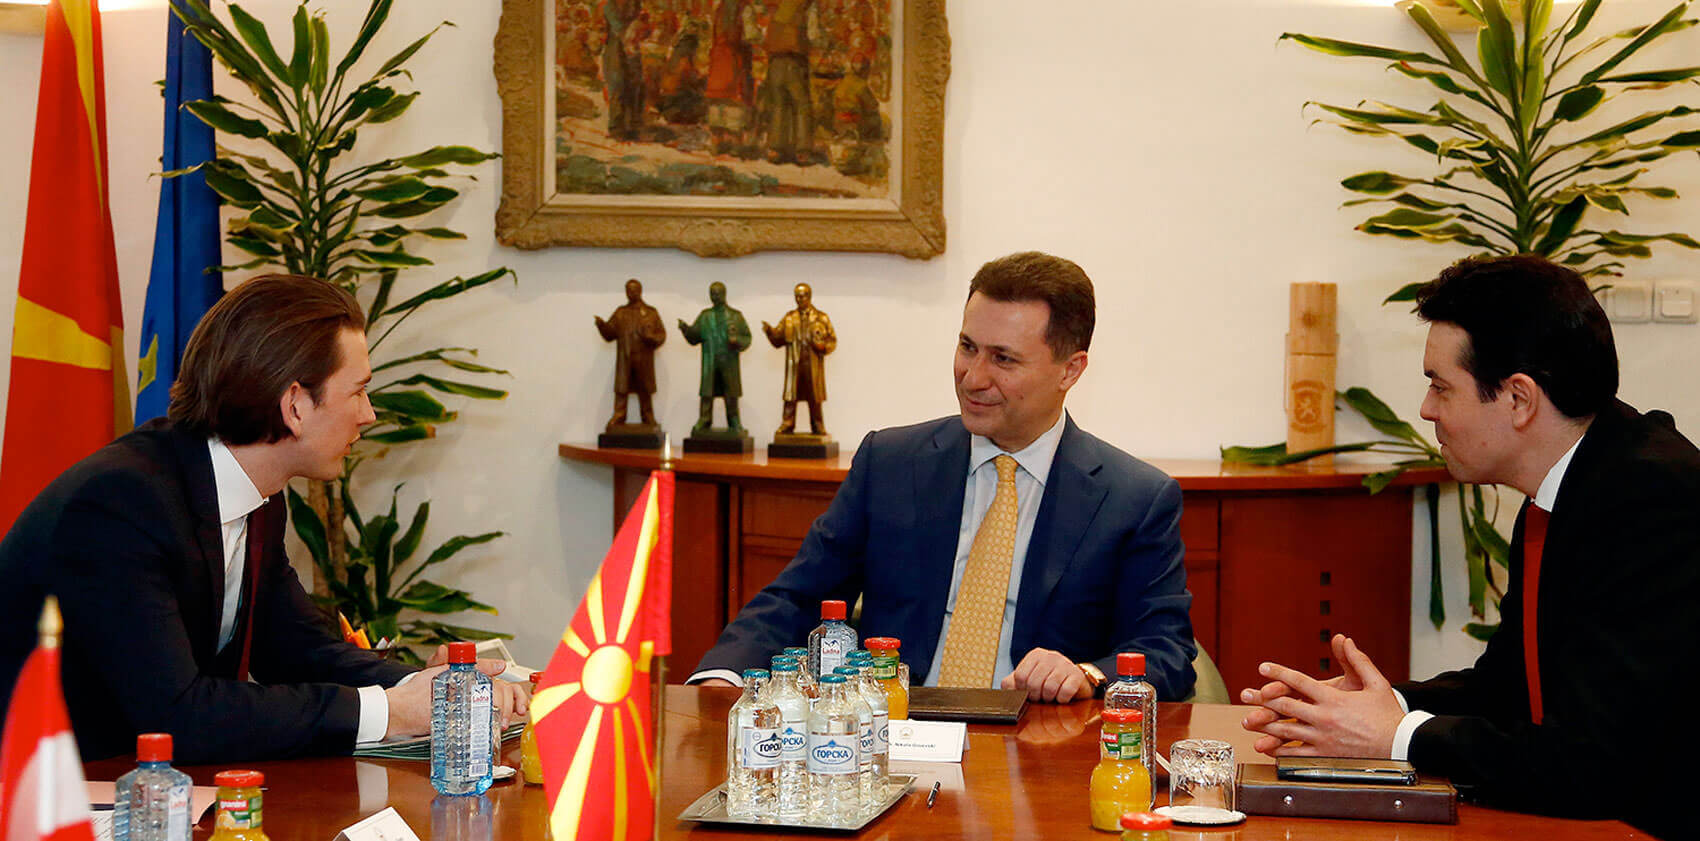 Warum unterstützt die ÖVP eine korrupte und gewaltbereite Partei in Mazedonien?